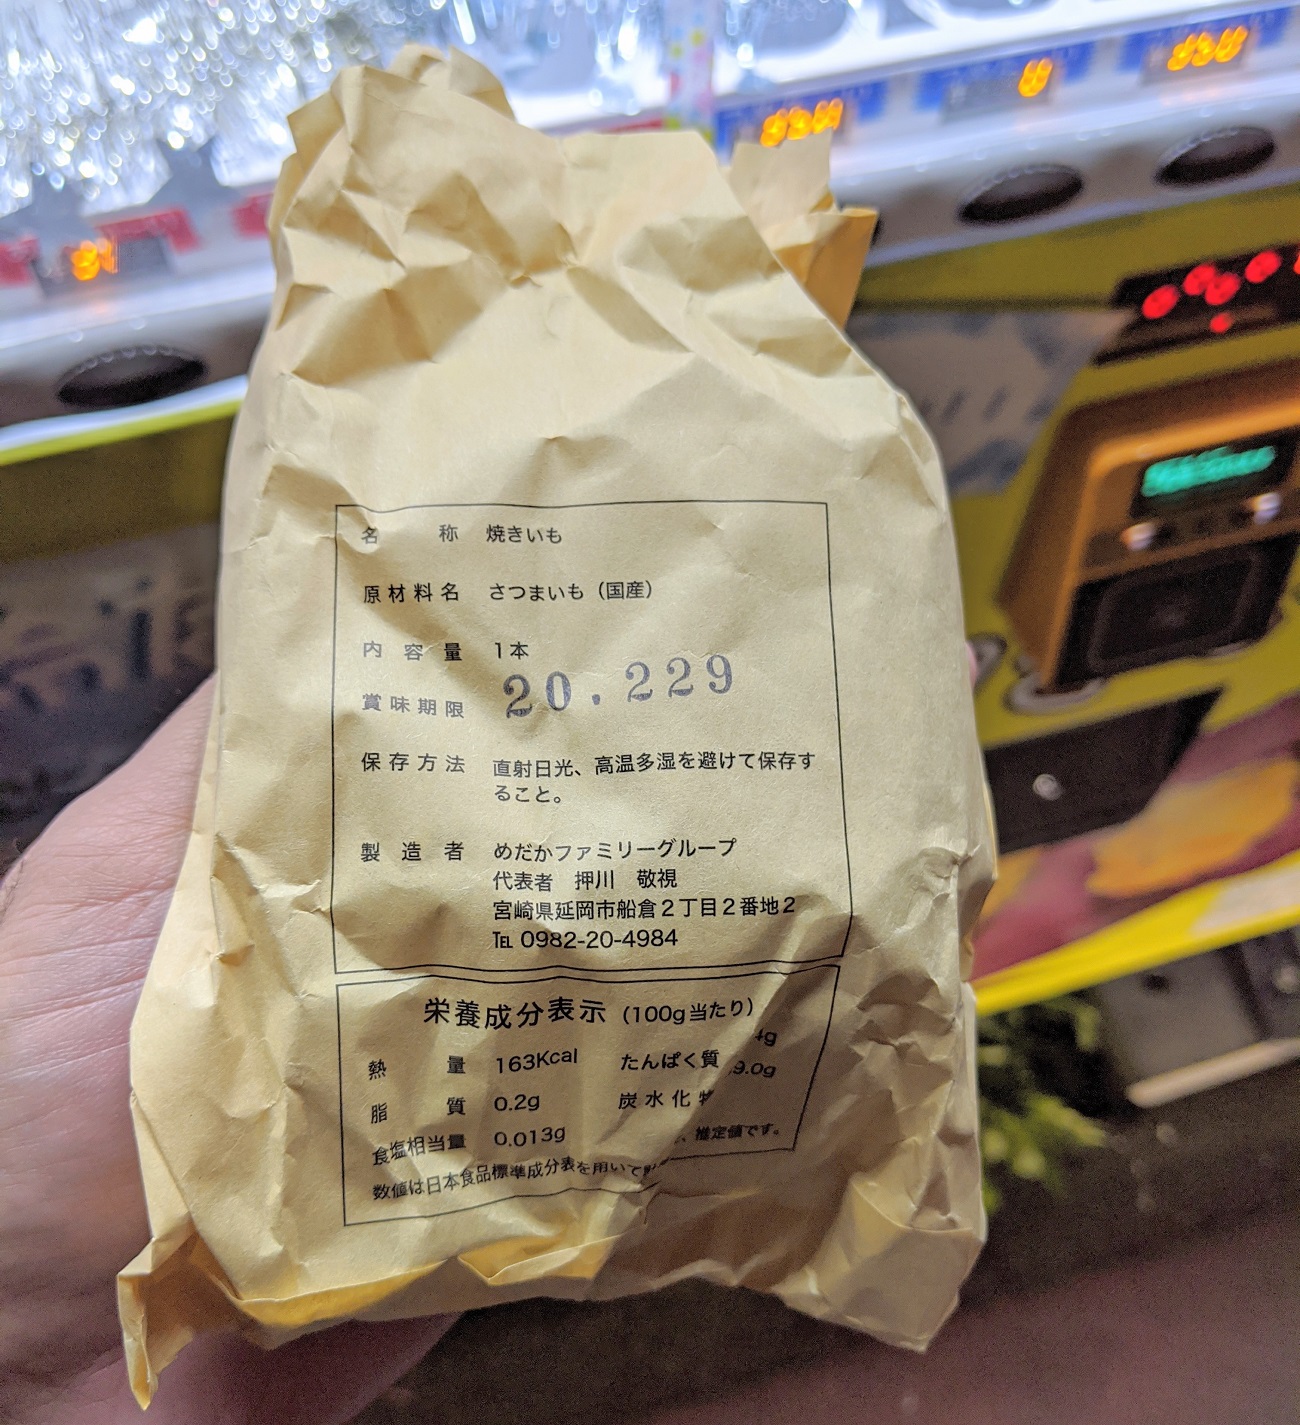 Bạn có thể mua được cả khoai lang nướng chảy mật ở máy bán hàng tự động tại Nhật Bản - Ảnh 8.